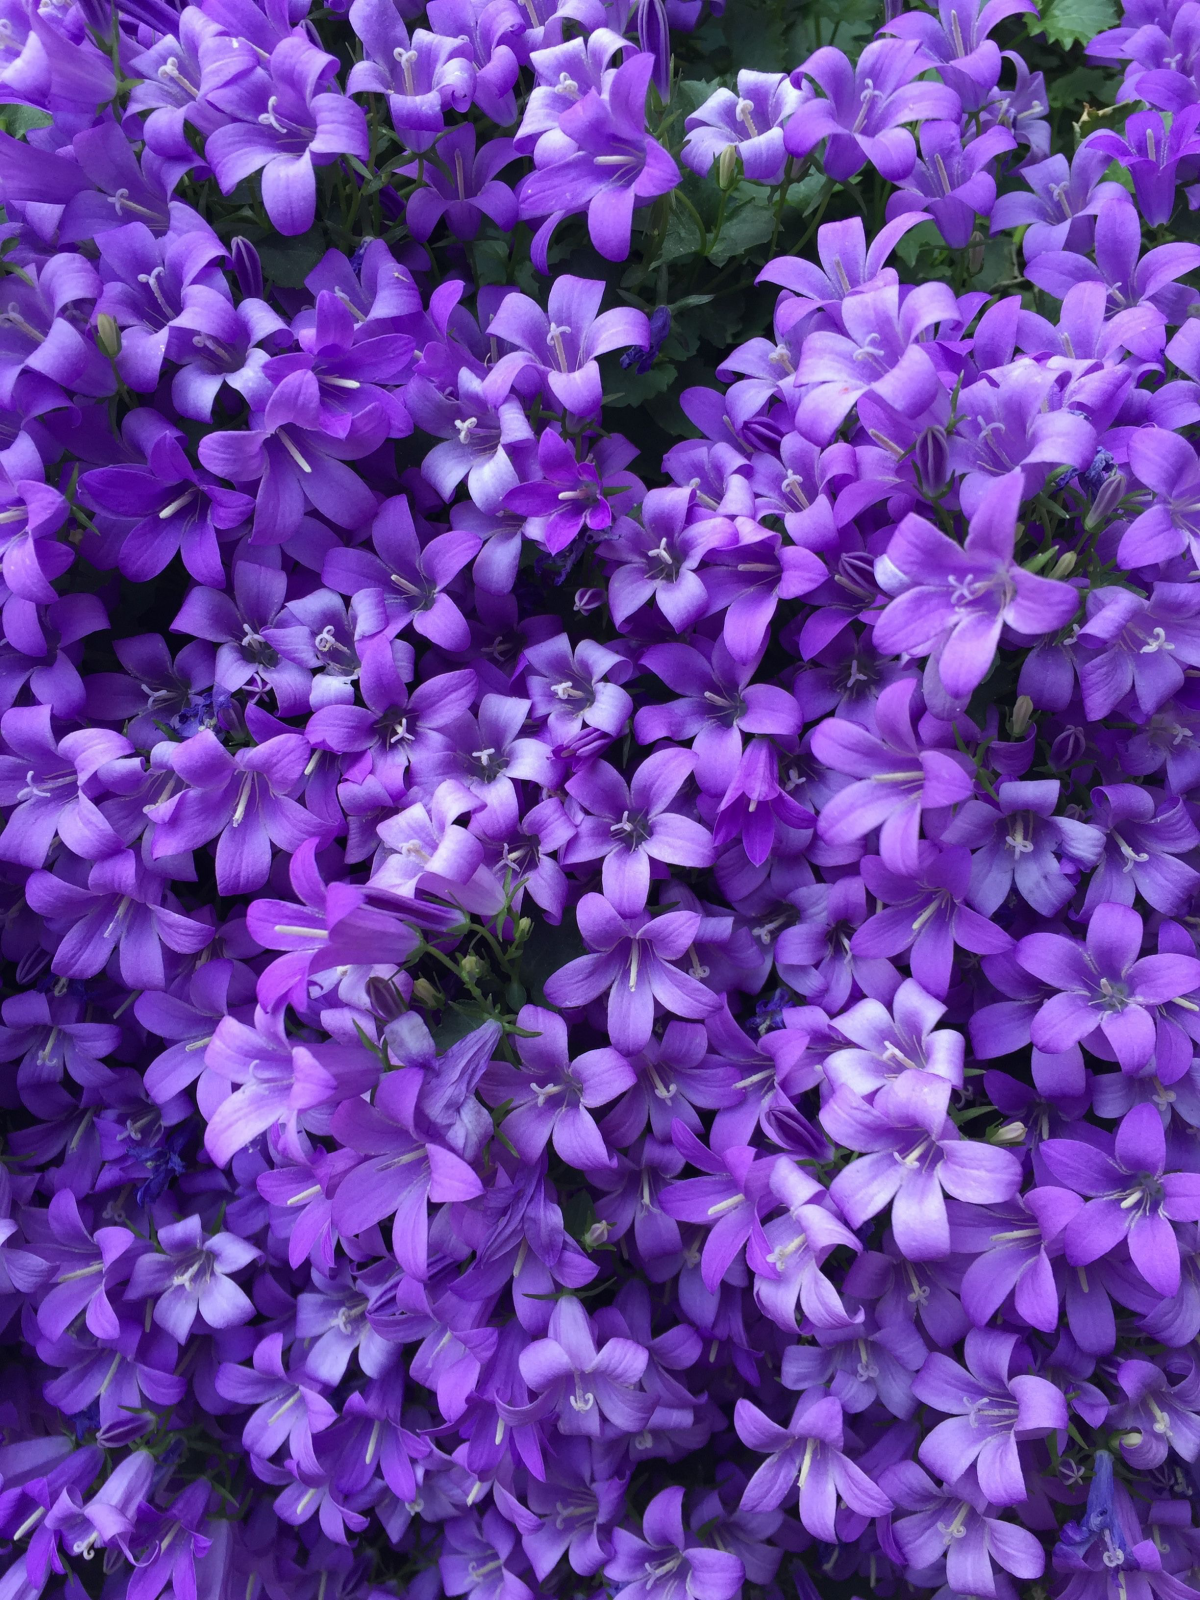 multiple small purple flowers